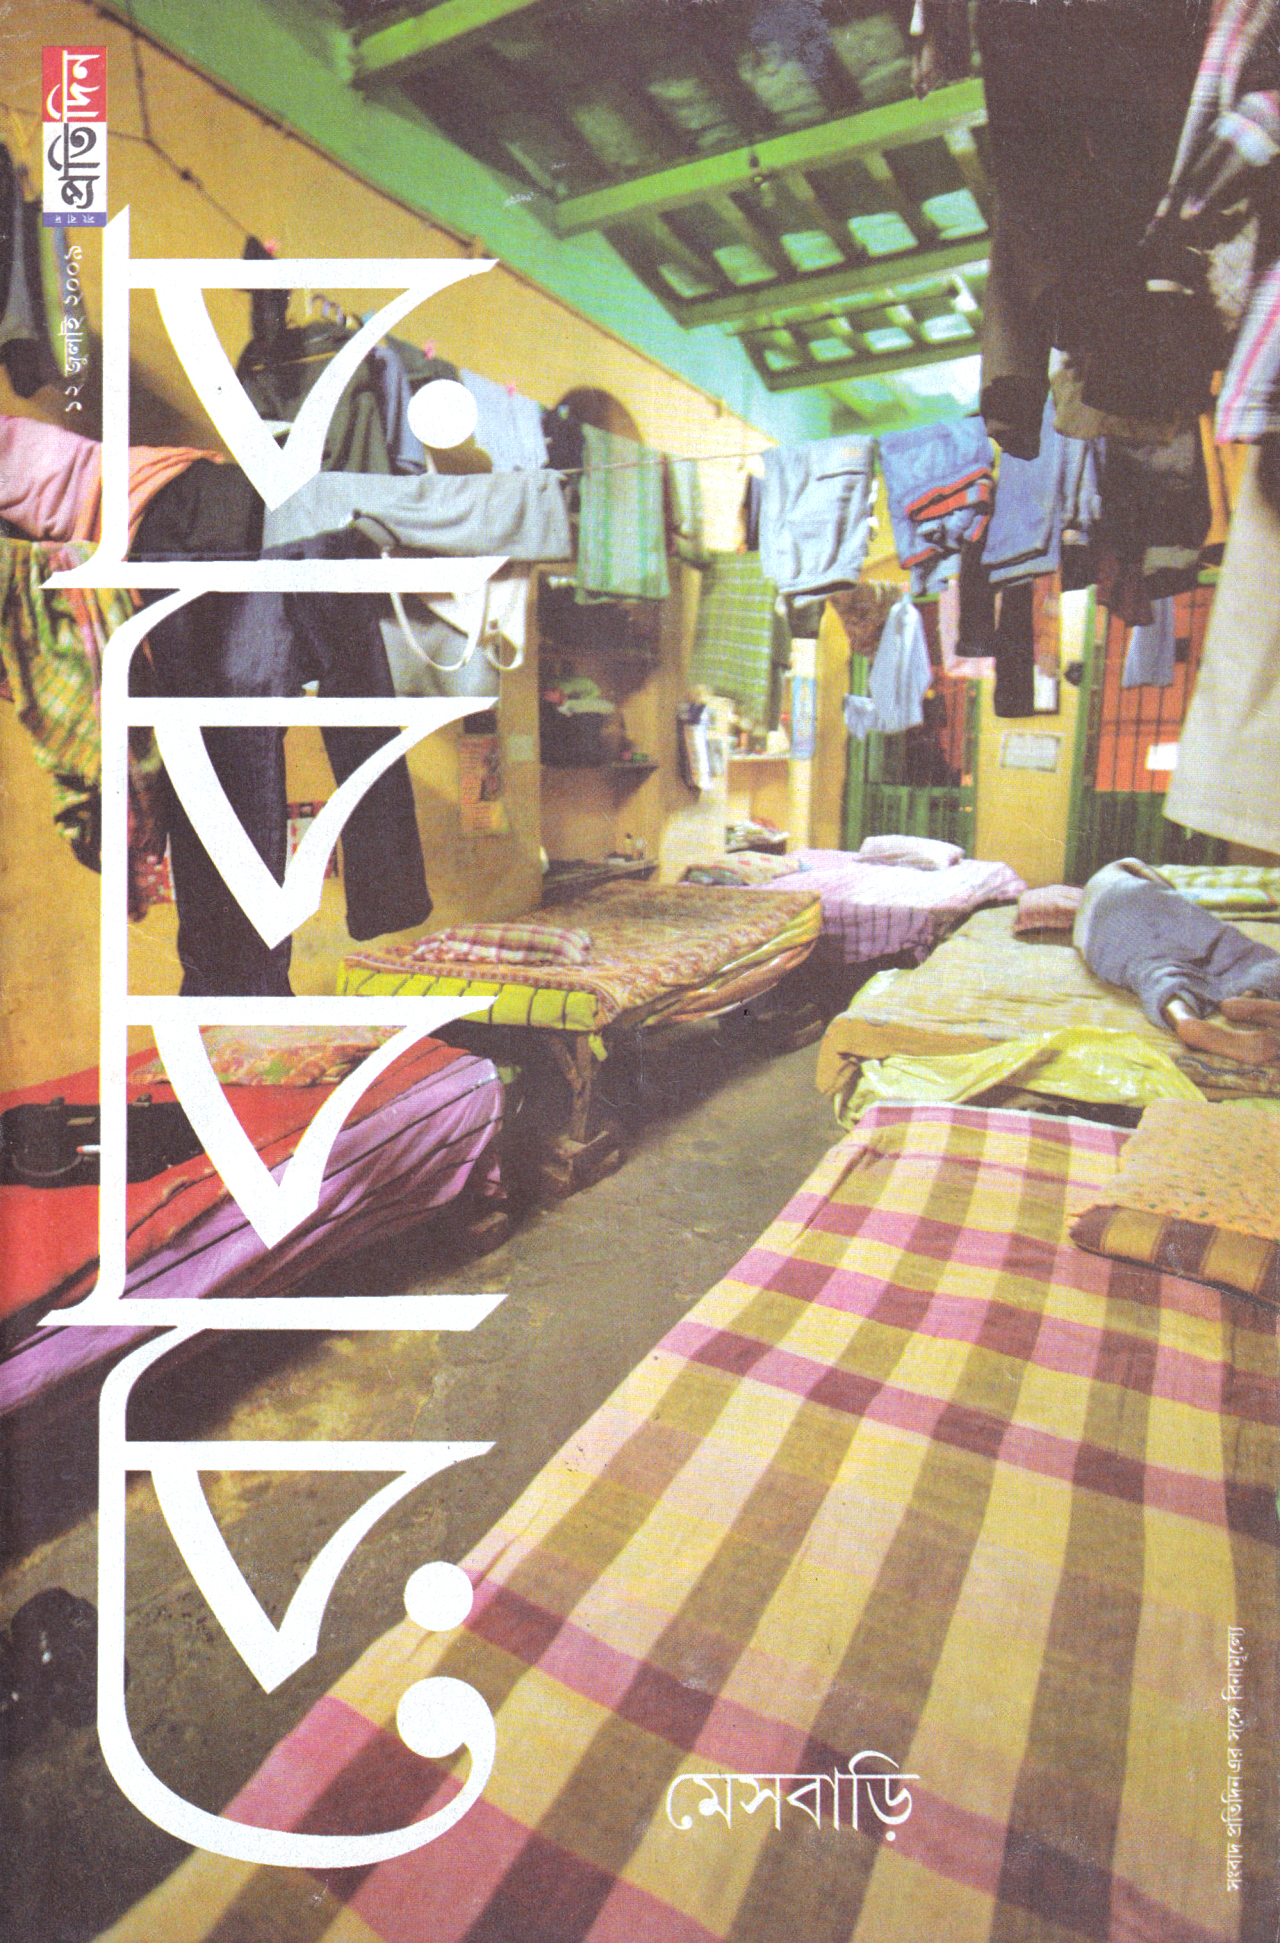 ধুলোখেলা - A Bengali Magazine Archive: Robbar Magazine - 2009, July 12